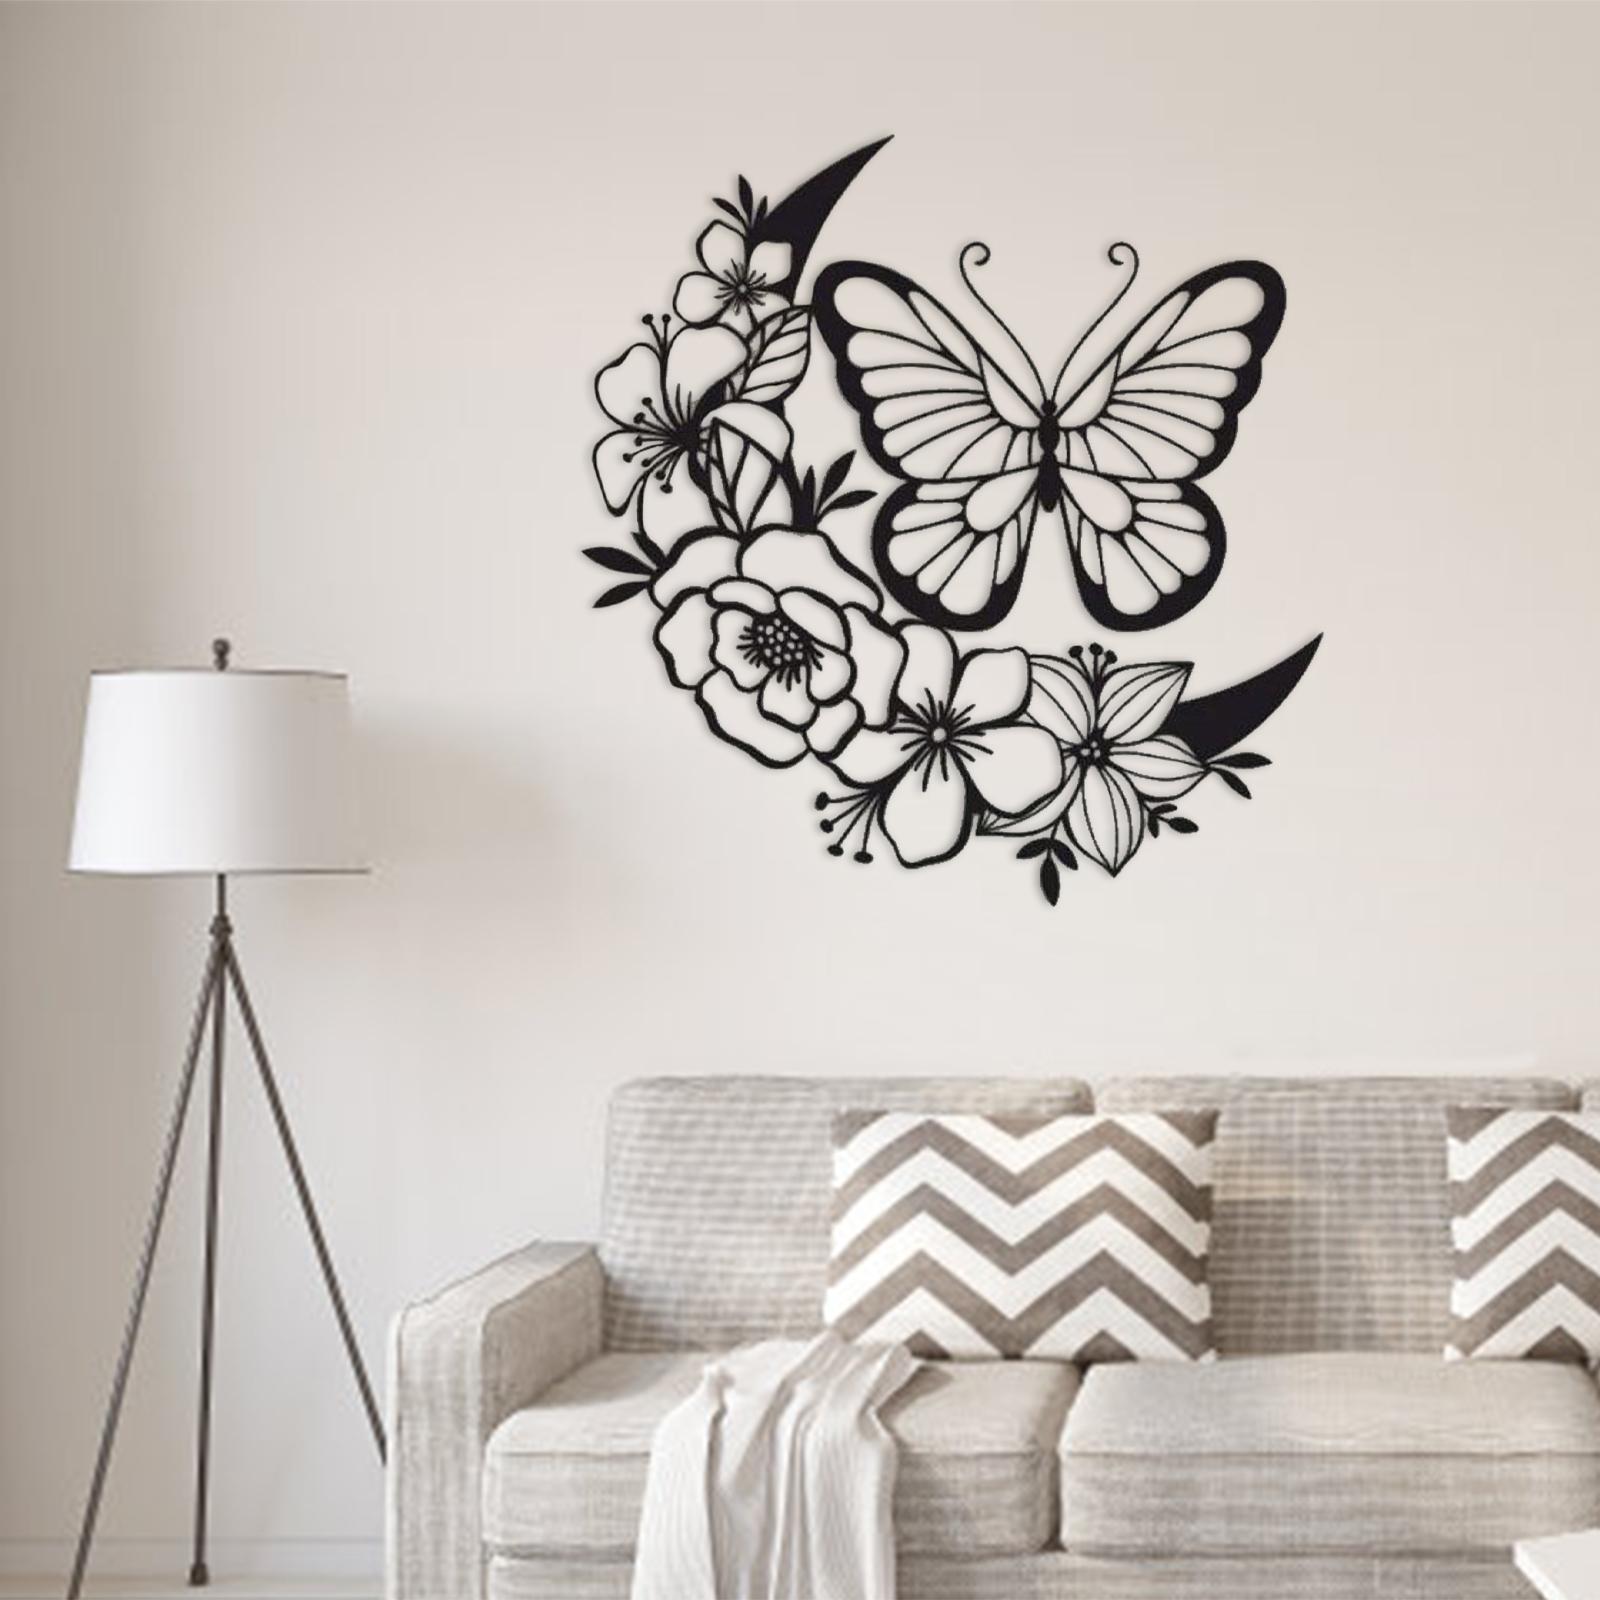 Flower Butterflies Wall Art Sculptures Silhouette Hanging for Bathroom Decor